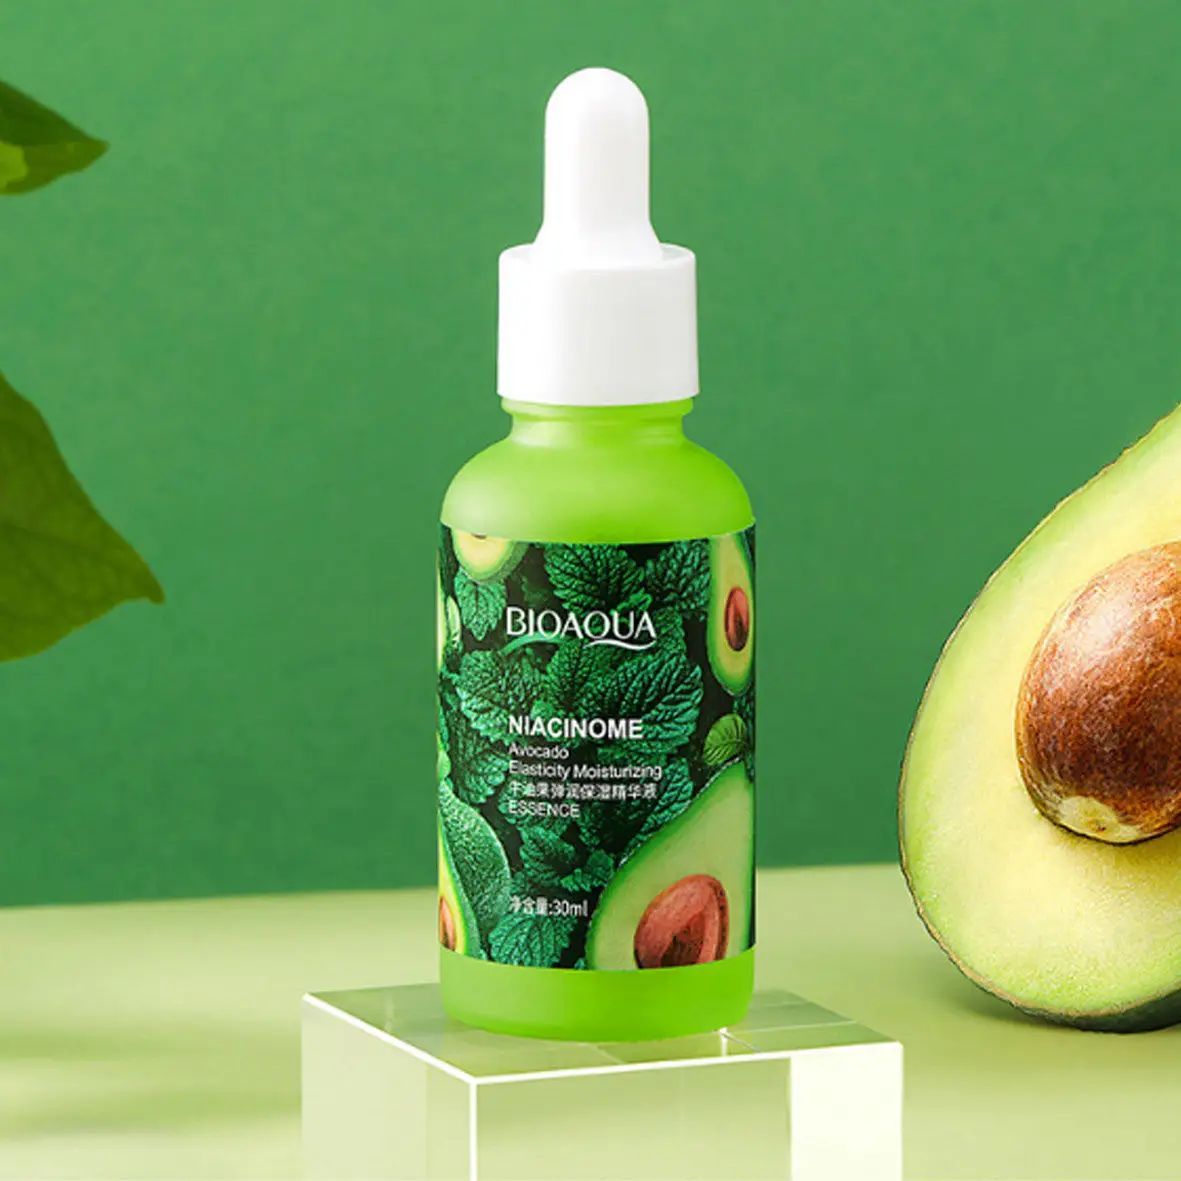 Сыворотка для лица BioAqua Niacinome Avocado, с экстрактом авокадо, 30 мл - фото 4